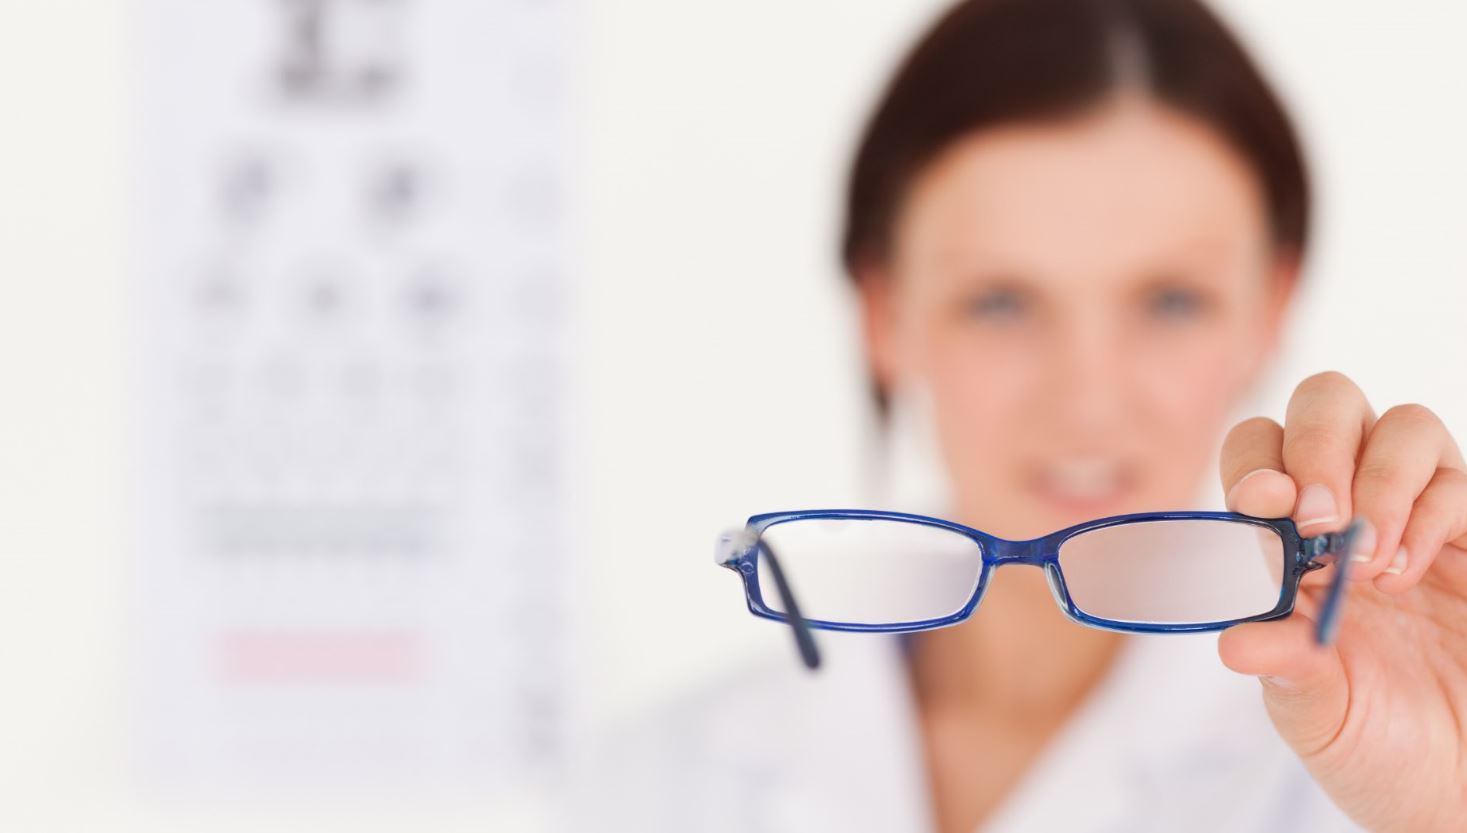 מיתוסים על ראיית עיניים - מוסברים על ידי רופא עיניים מומחה לרשתית